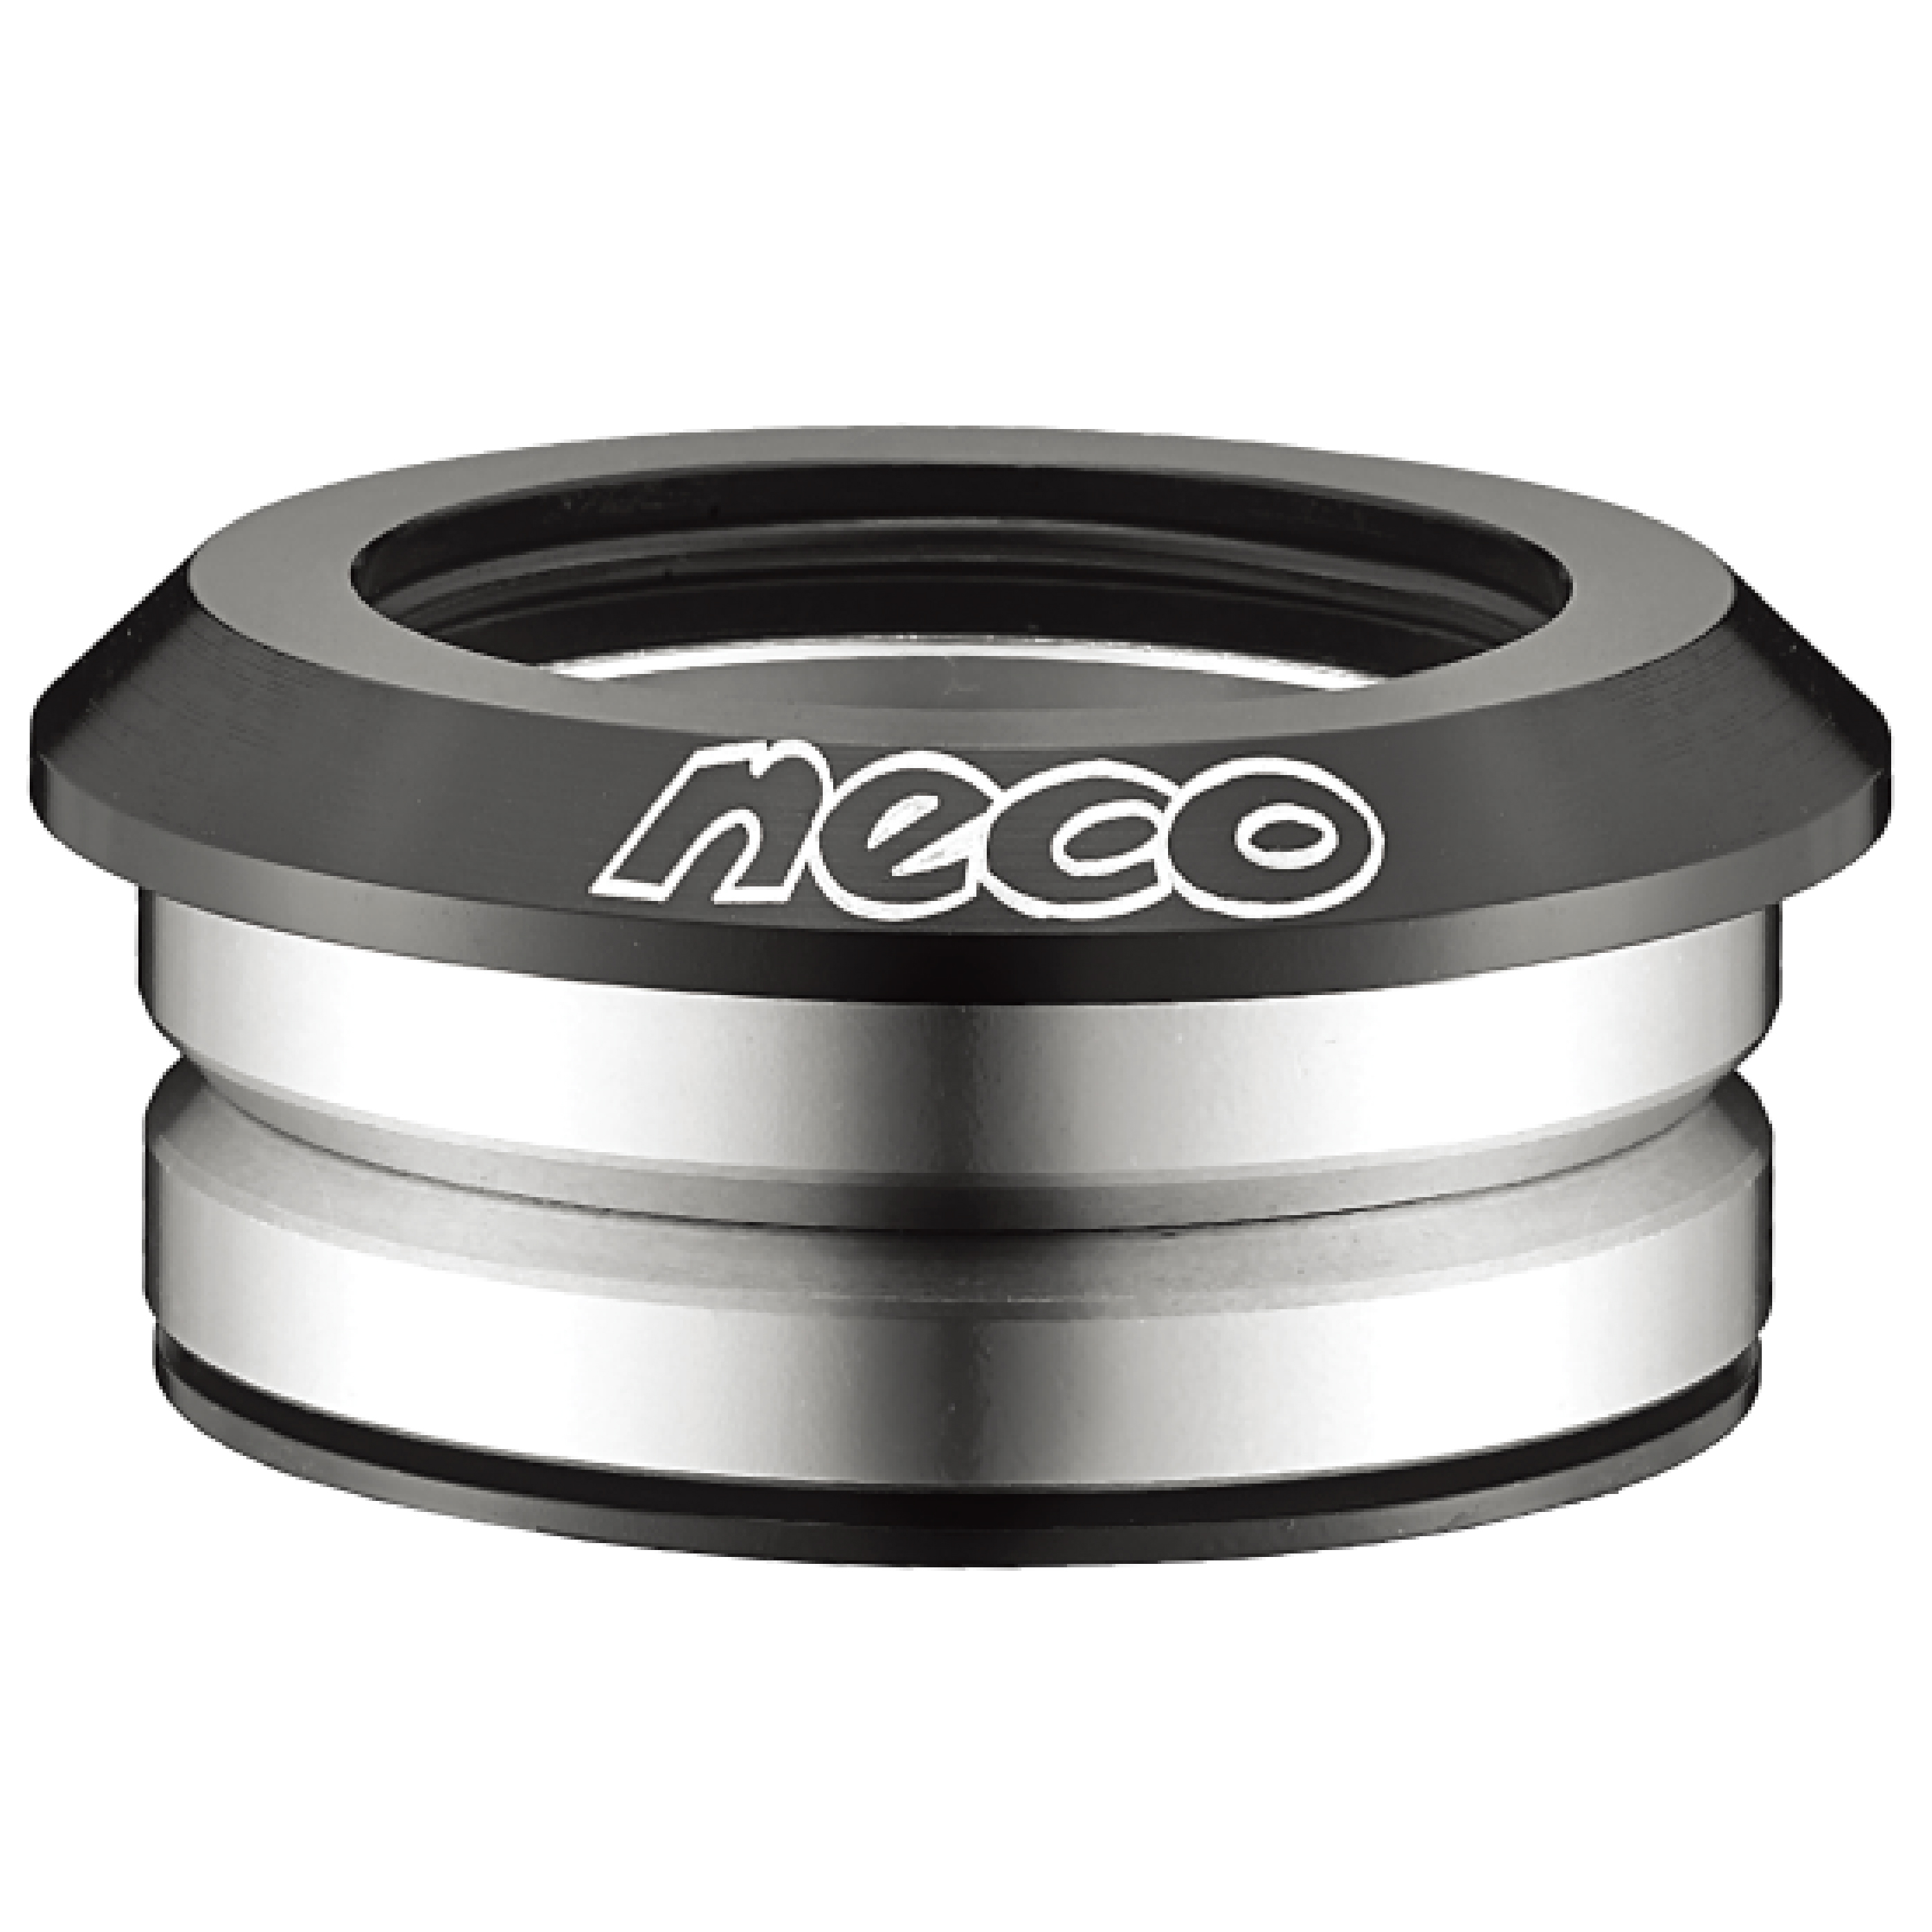 Neco プロの自転車部品メーカー Neco Technology Industry Co Ltd